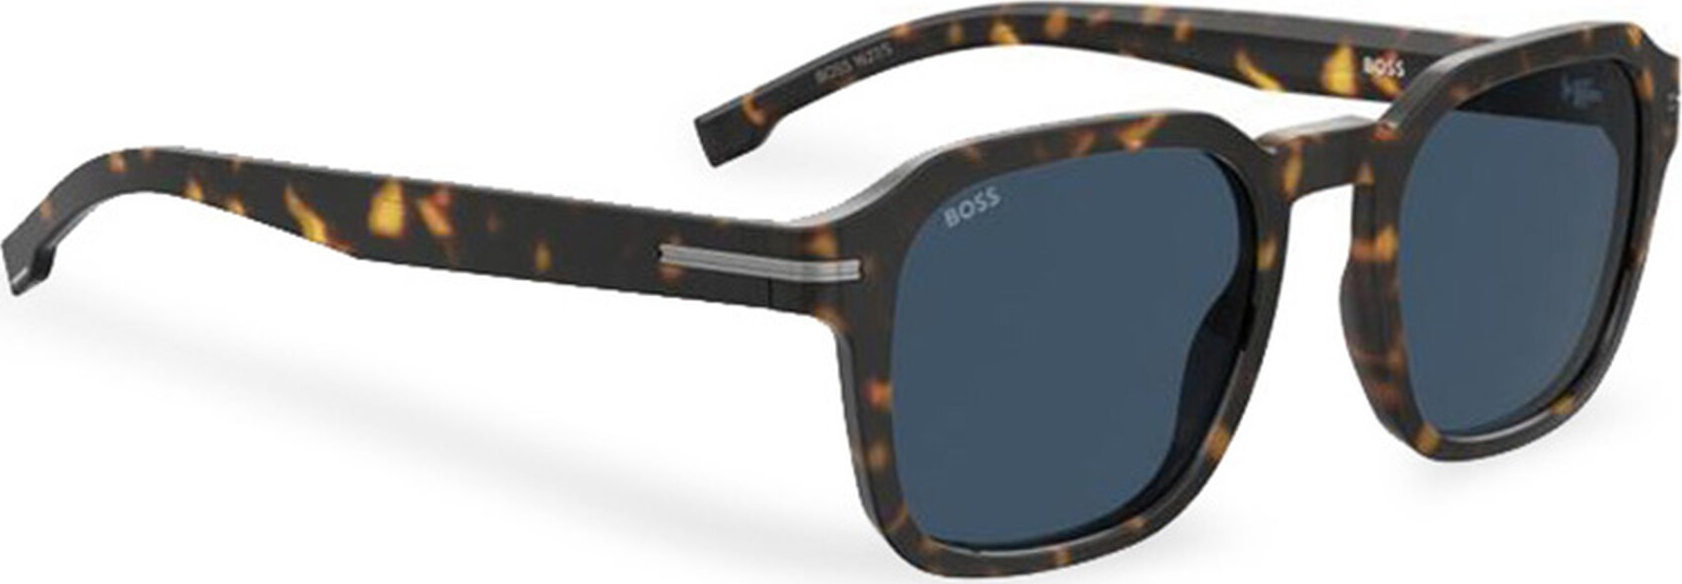 Sluneční brýle Boss 1627/S 206802 Havana 086 KU